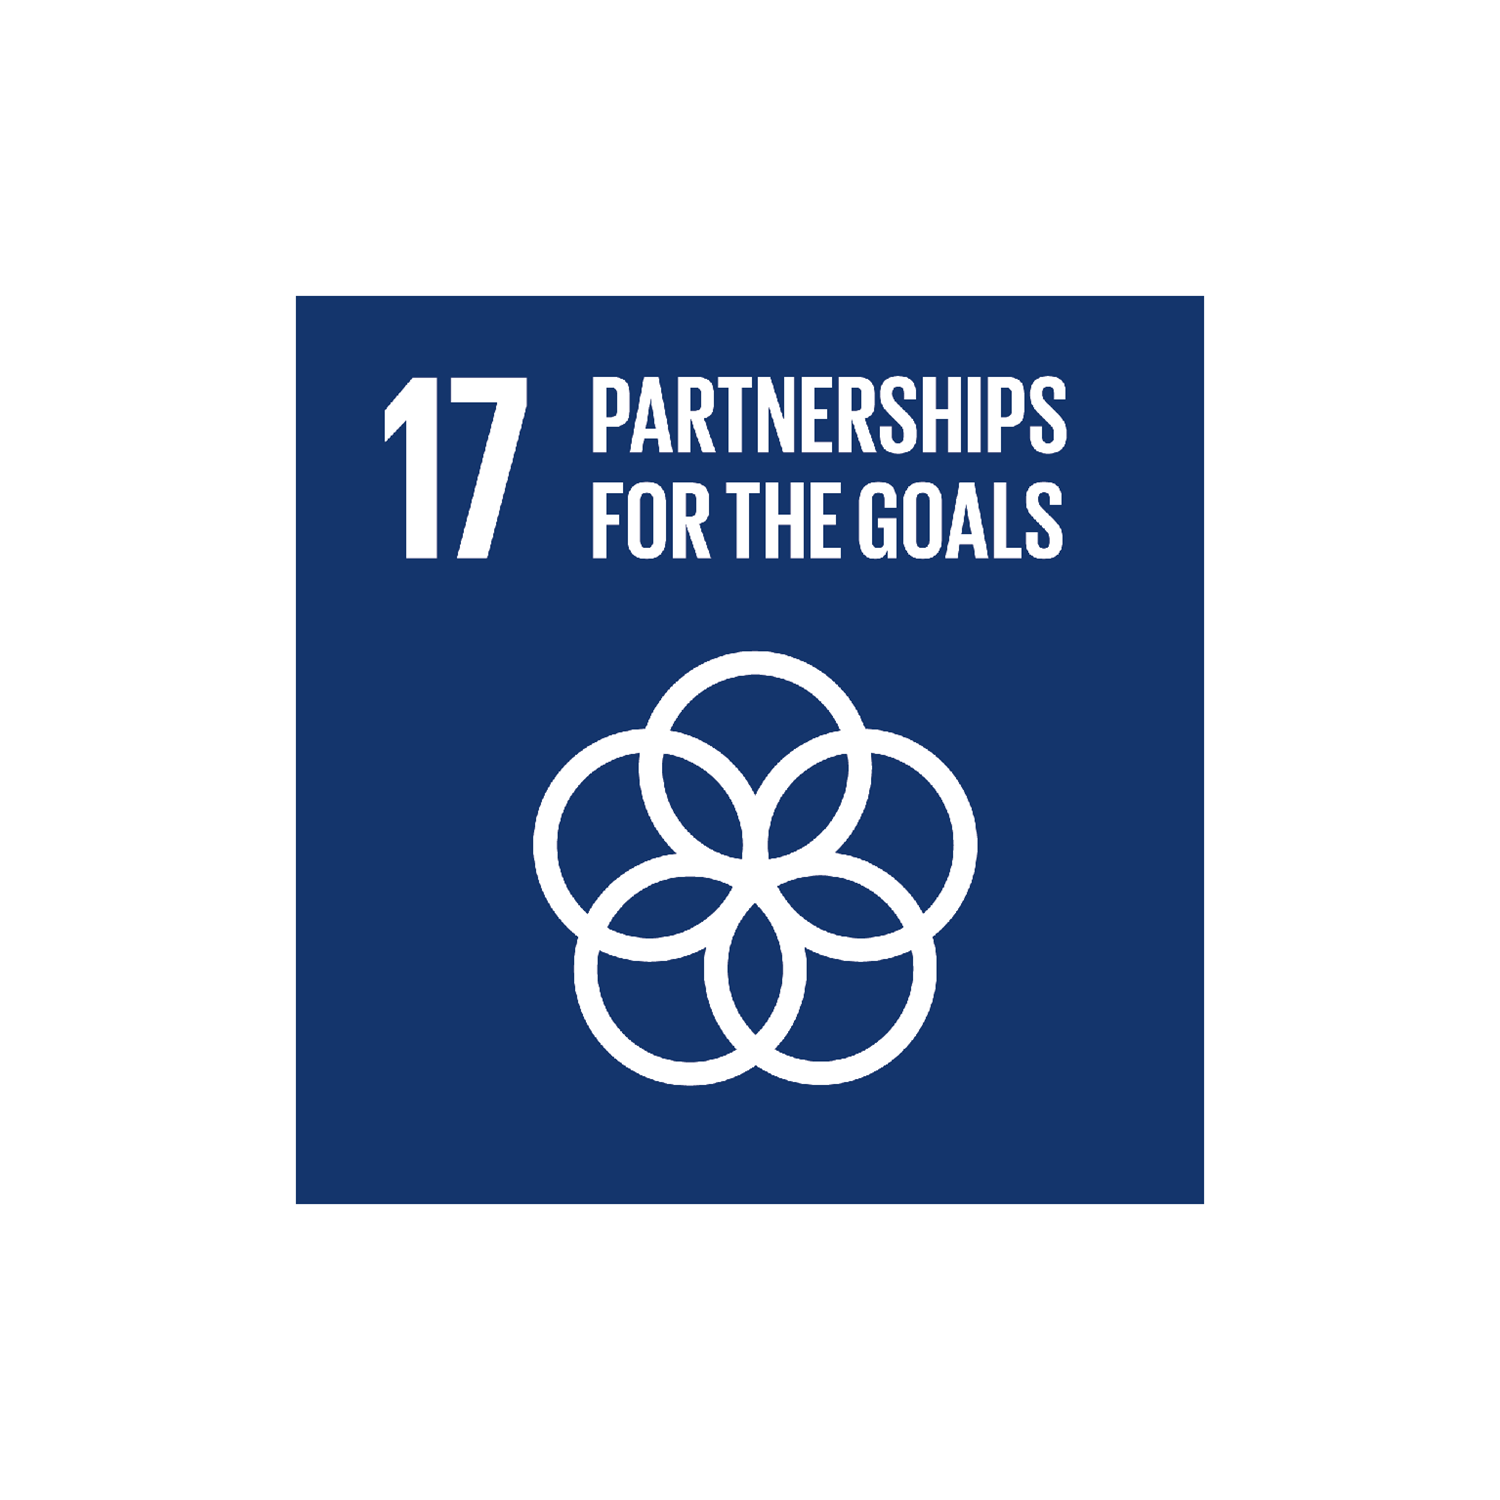 SDG 17: Partnerships for the goals